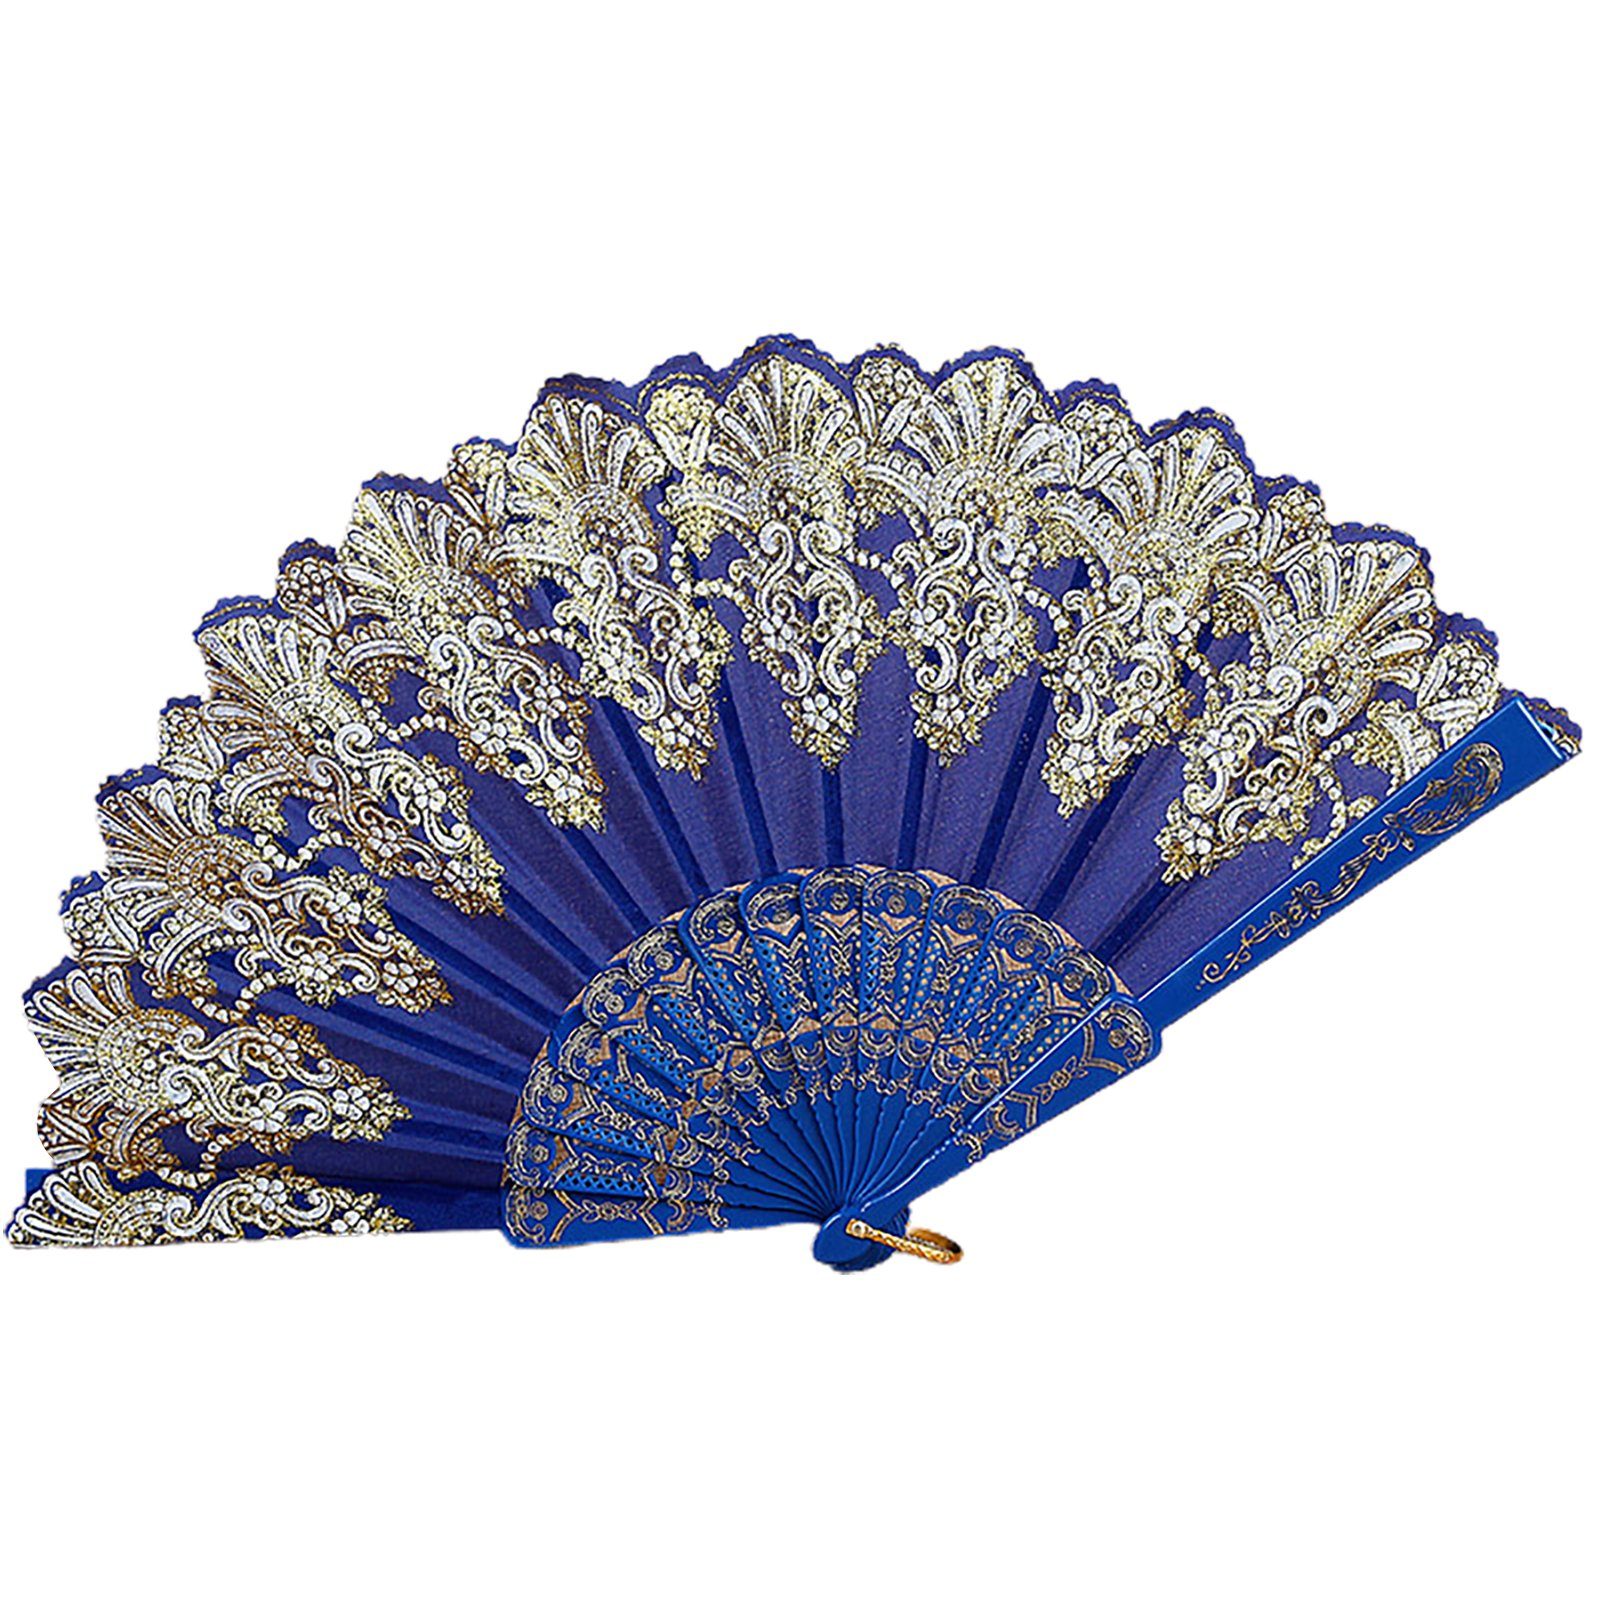 Royal Blue Vintage Handfächer Für Rutaqian Tanzparty , Handventilator Faltbarer Handfächer Hochzeit